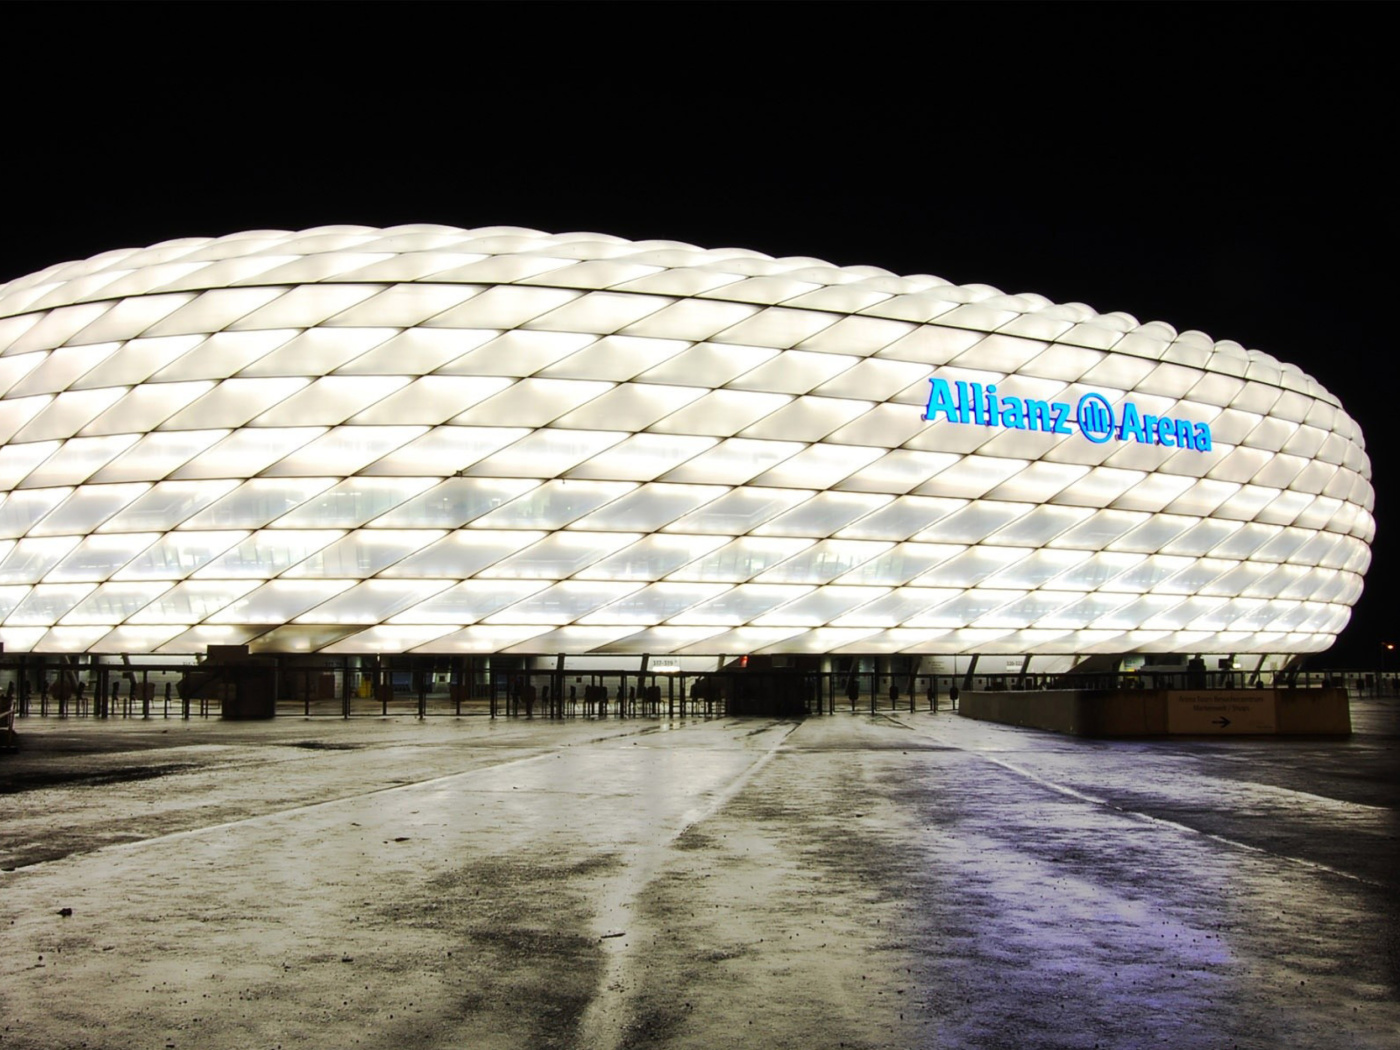 Allianz Arena is stadium in Munich wallpaper 1400x1050